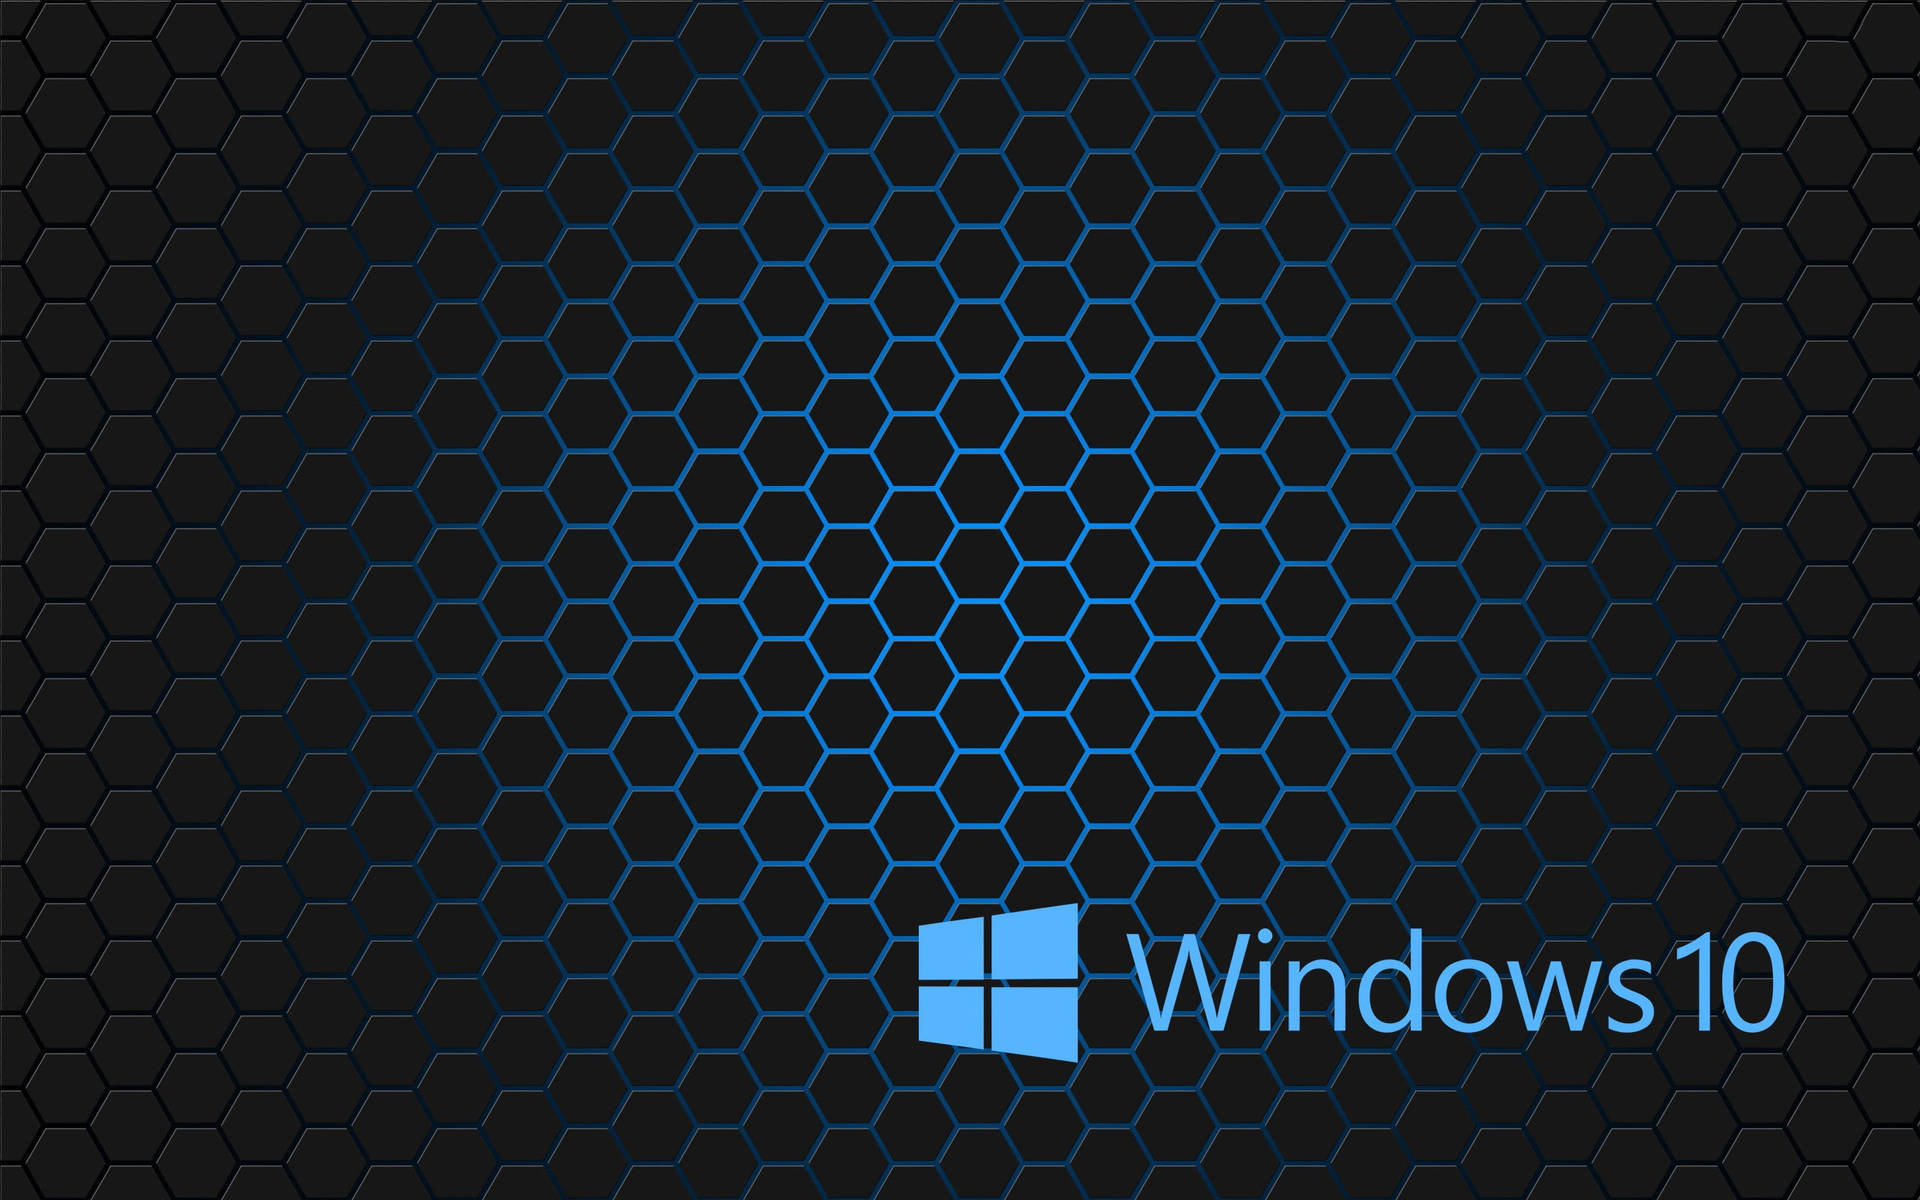 Hexagon Tiles Windows 10 Theme Background